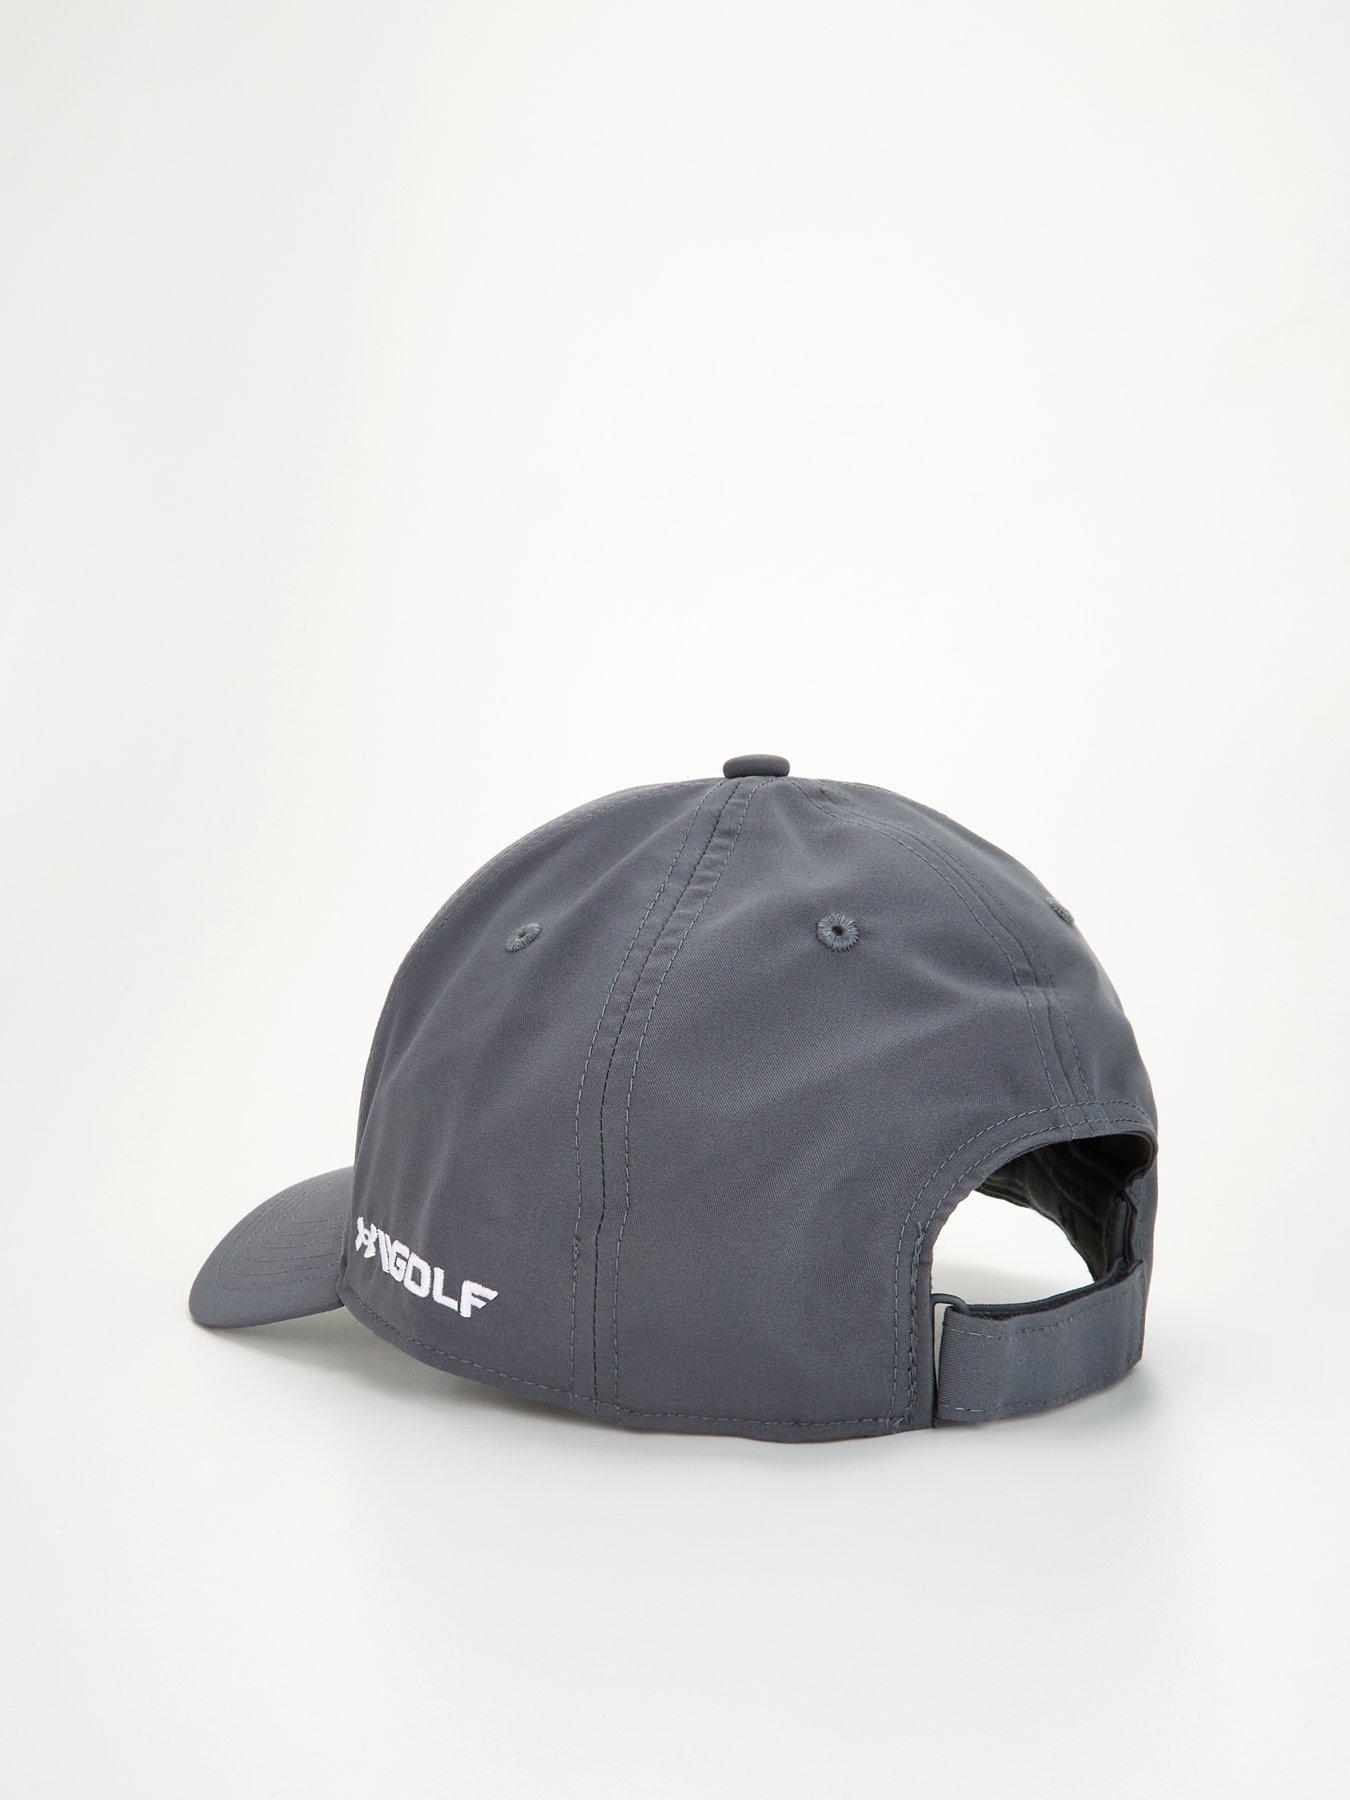 Under Armour - Golf96 Hat Cap